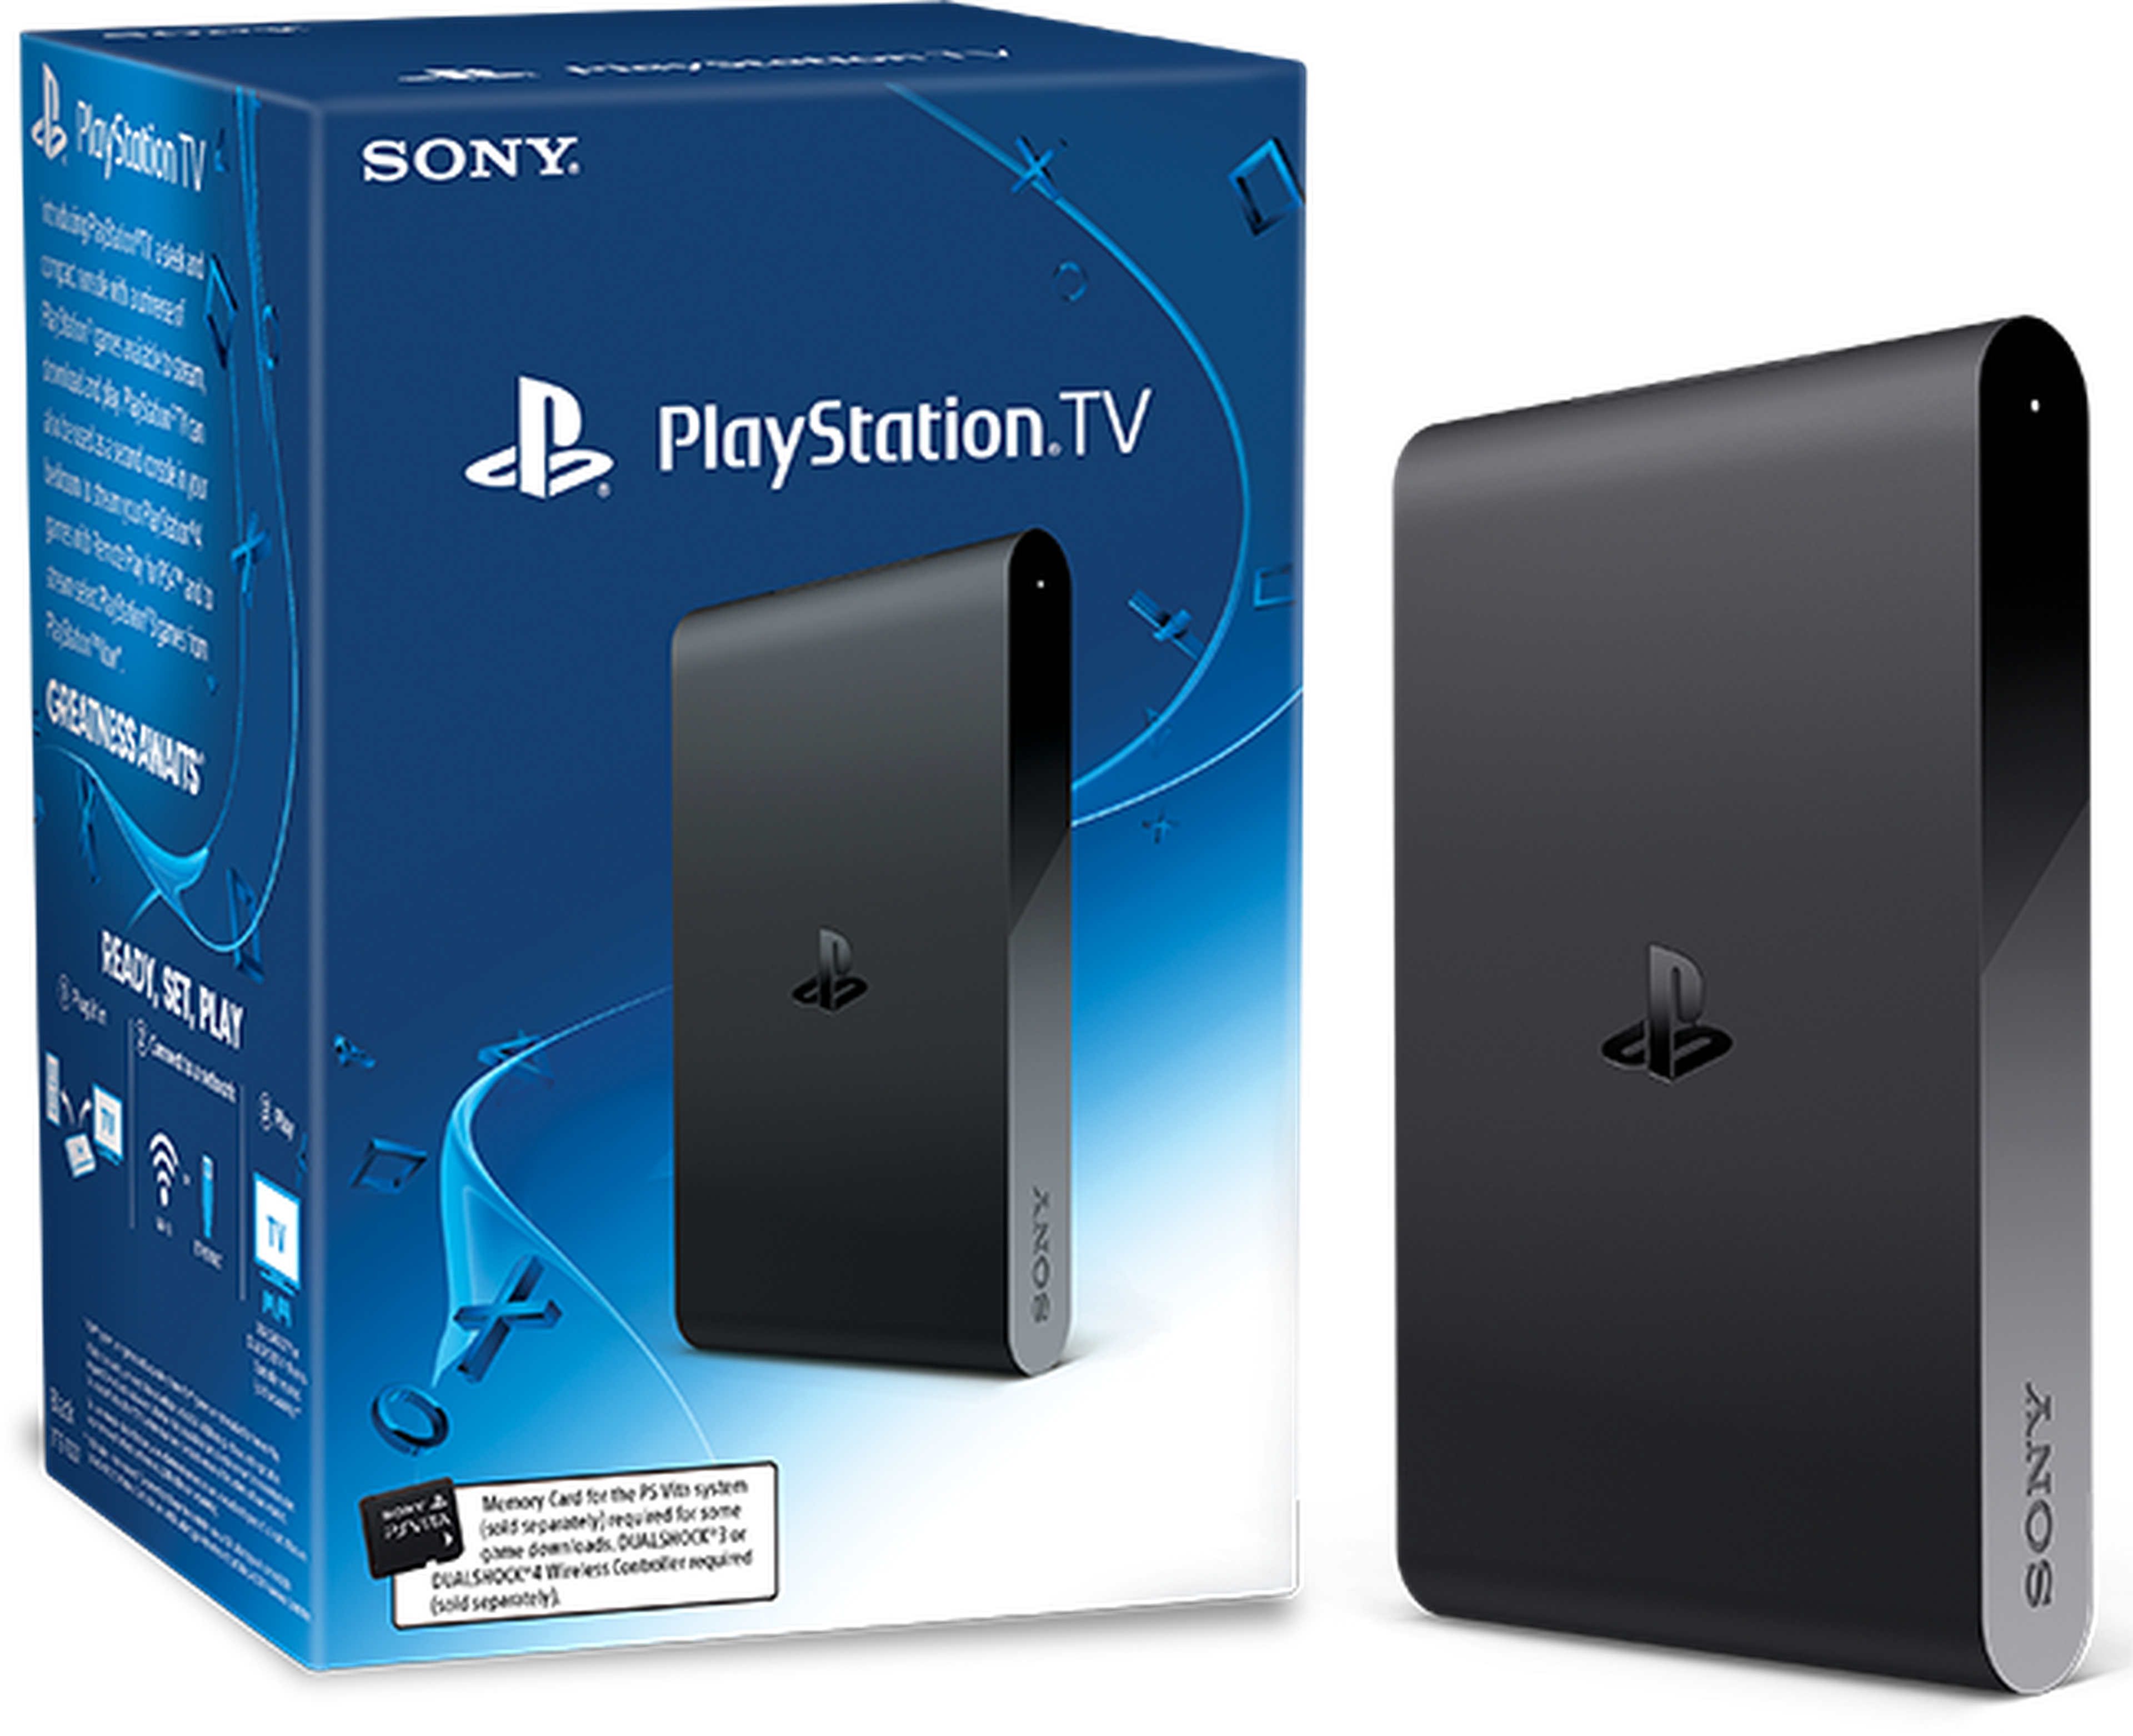 PlayStation Portal llegará al mercado a finales de año